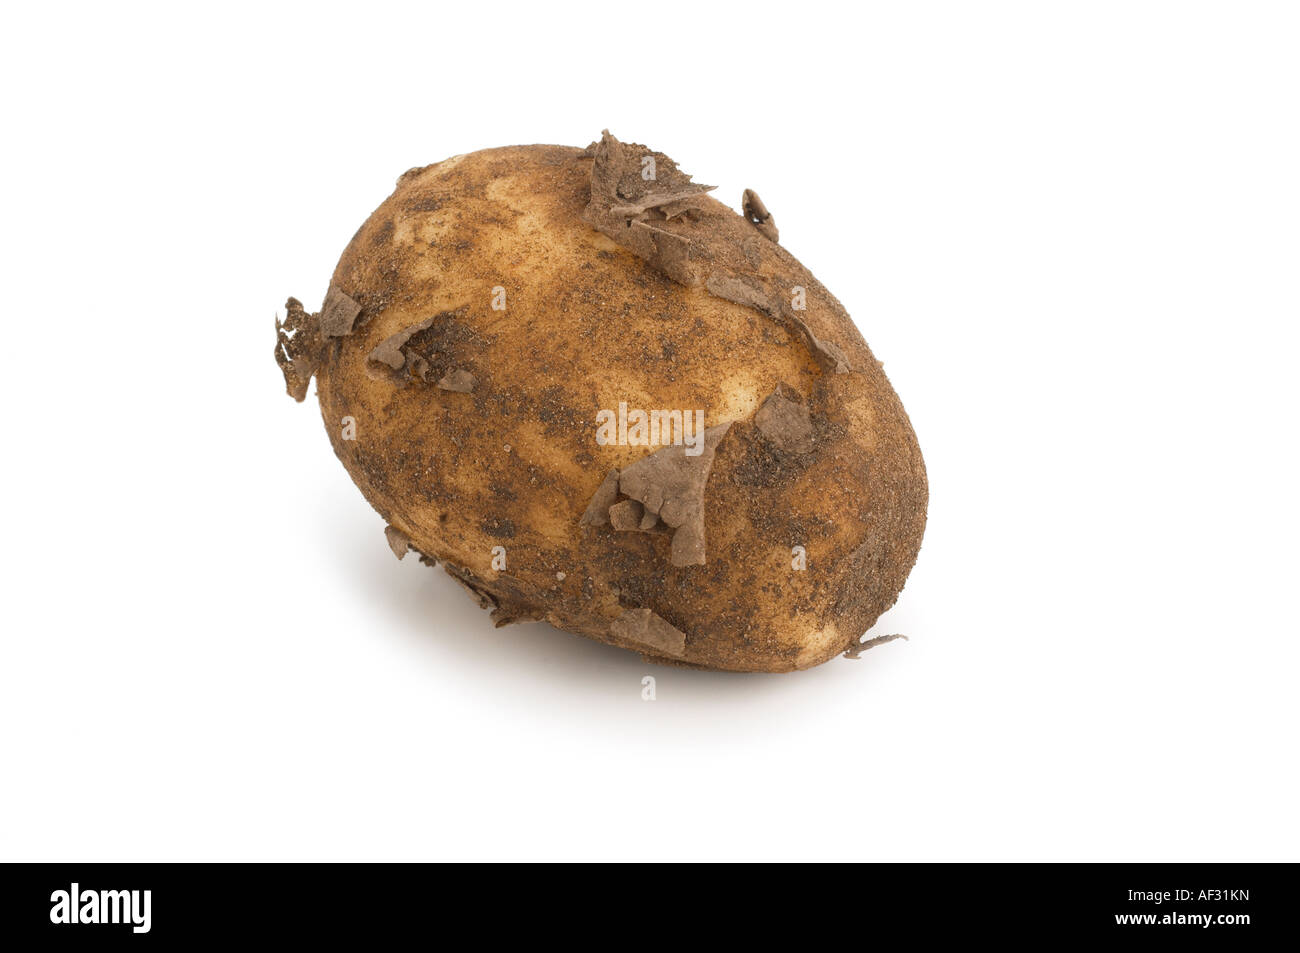 New Potato variety Norfolk Royal Stock Photo